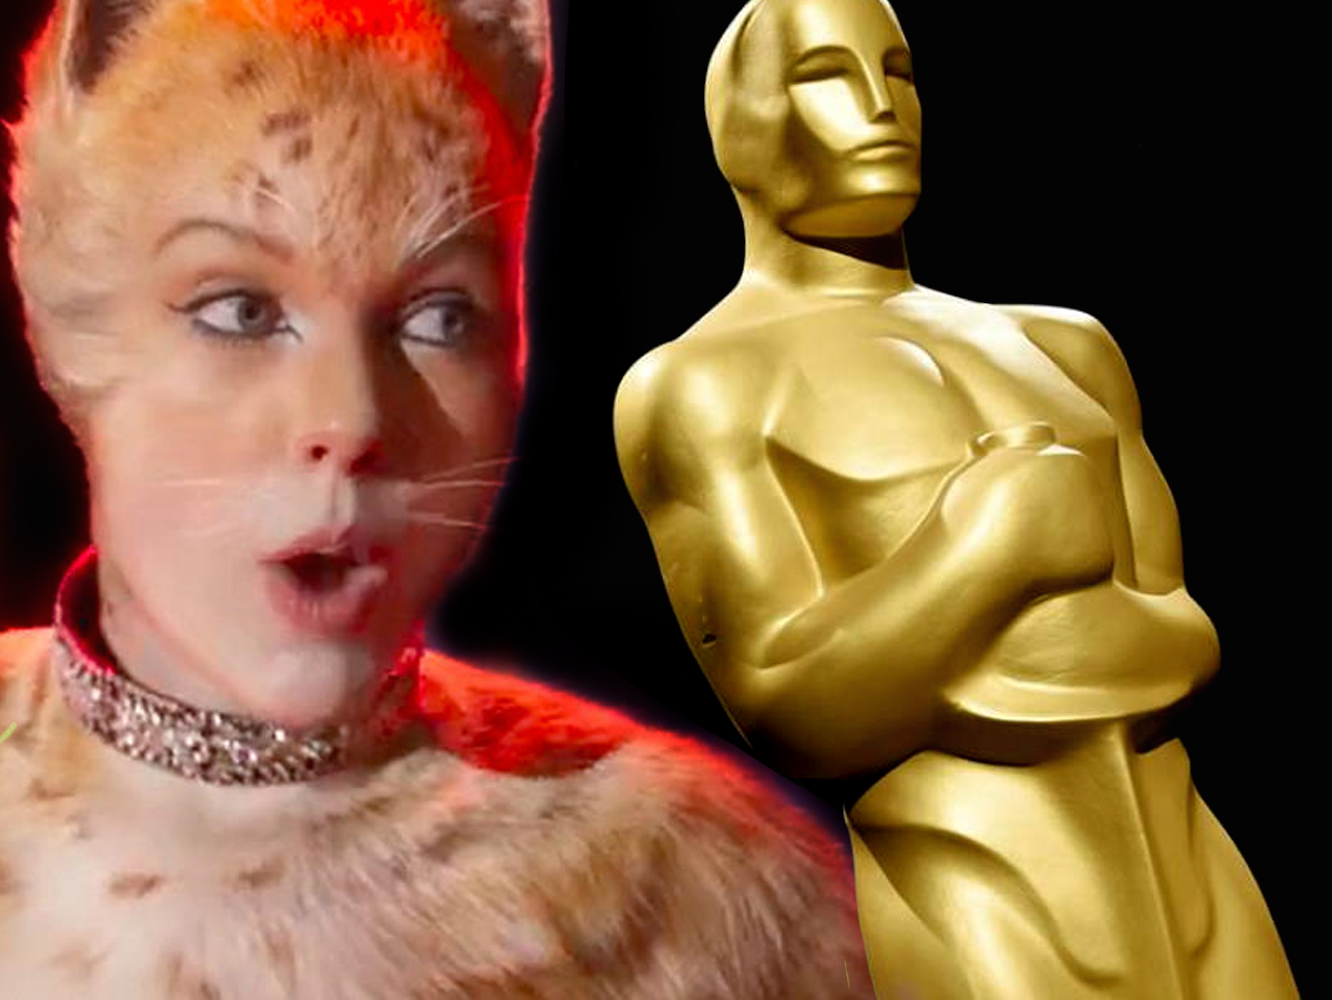  Los Oscar mantienen a Elton John y Beyoncé, pero dejan a Taylor Swift fuera de la carrera por la Mejor Canción